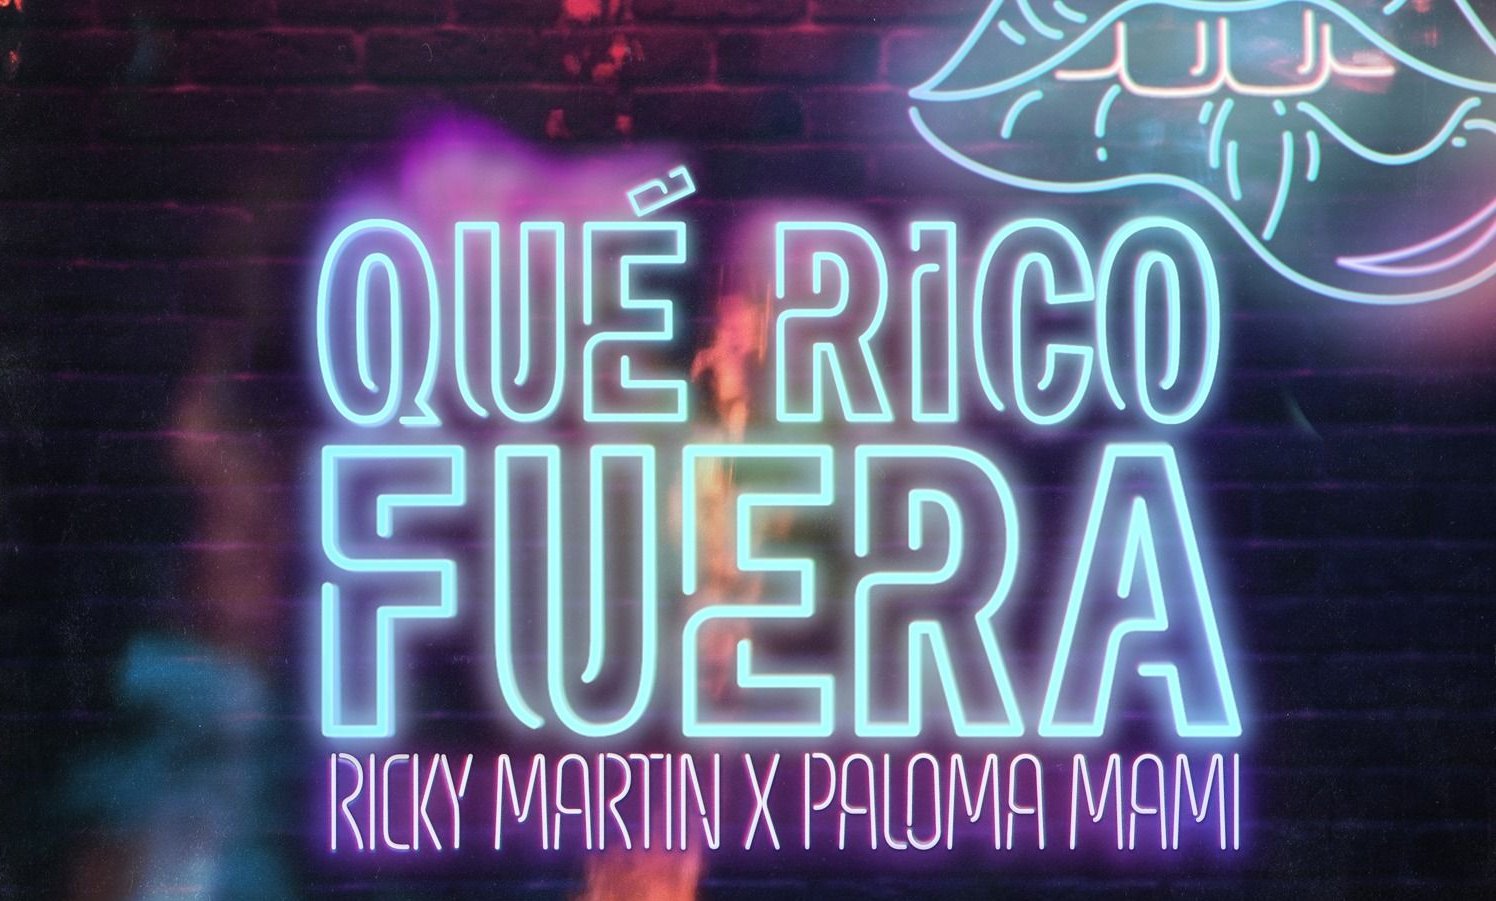 Ricky Martin junto a Paloma Mami presentaron: "Que rico fuera"